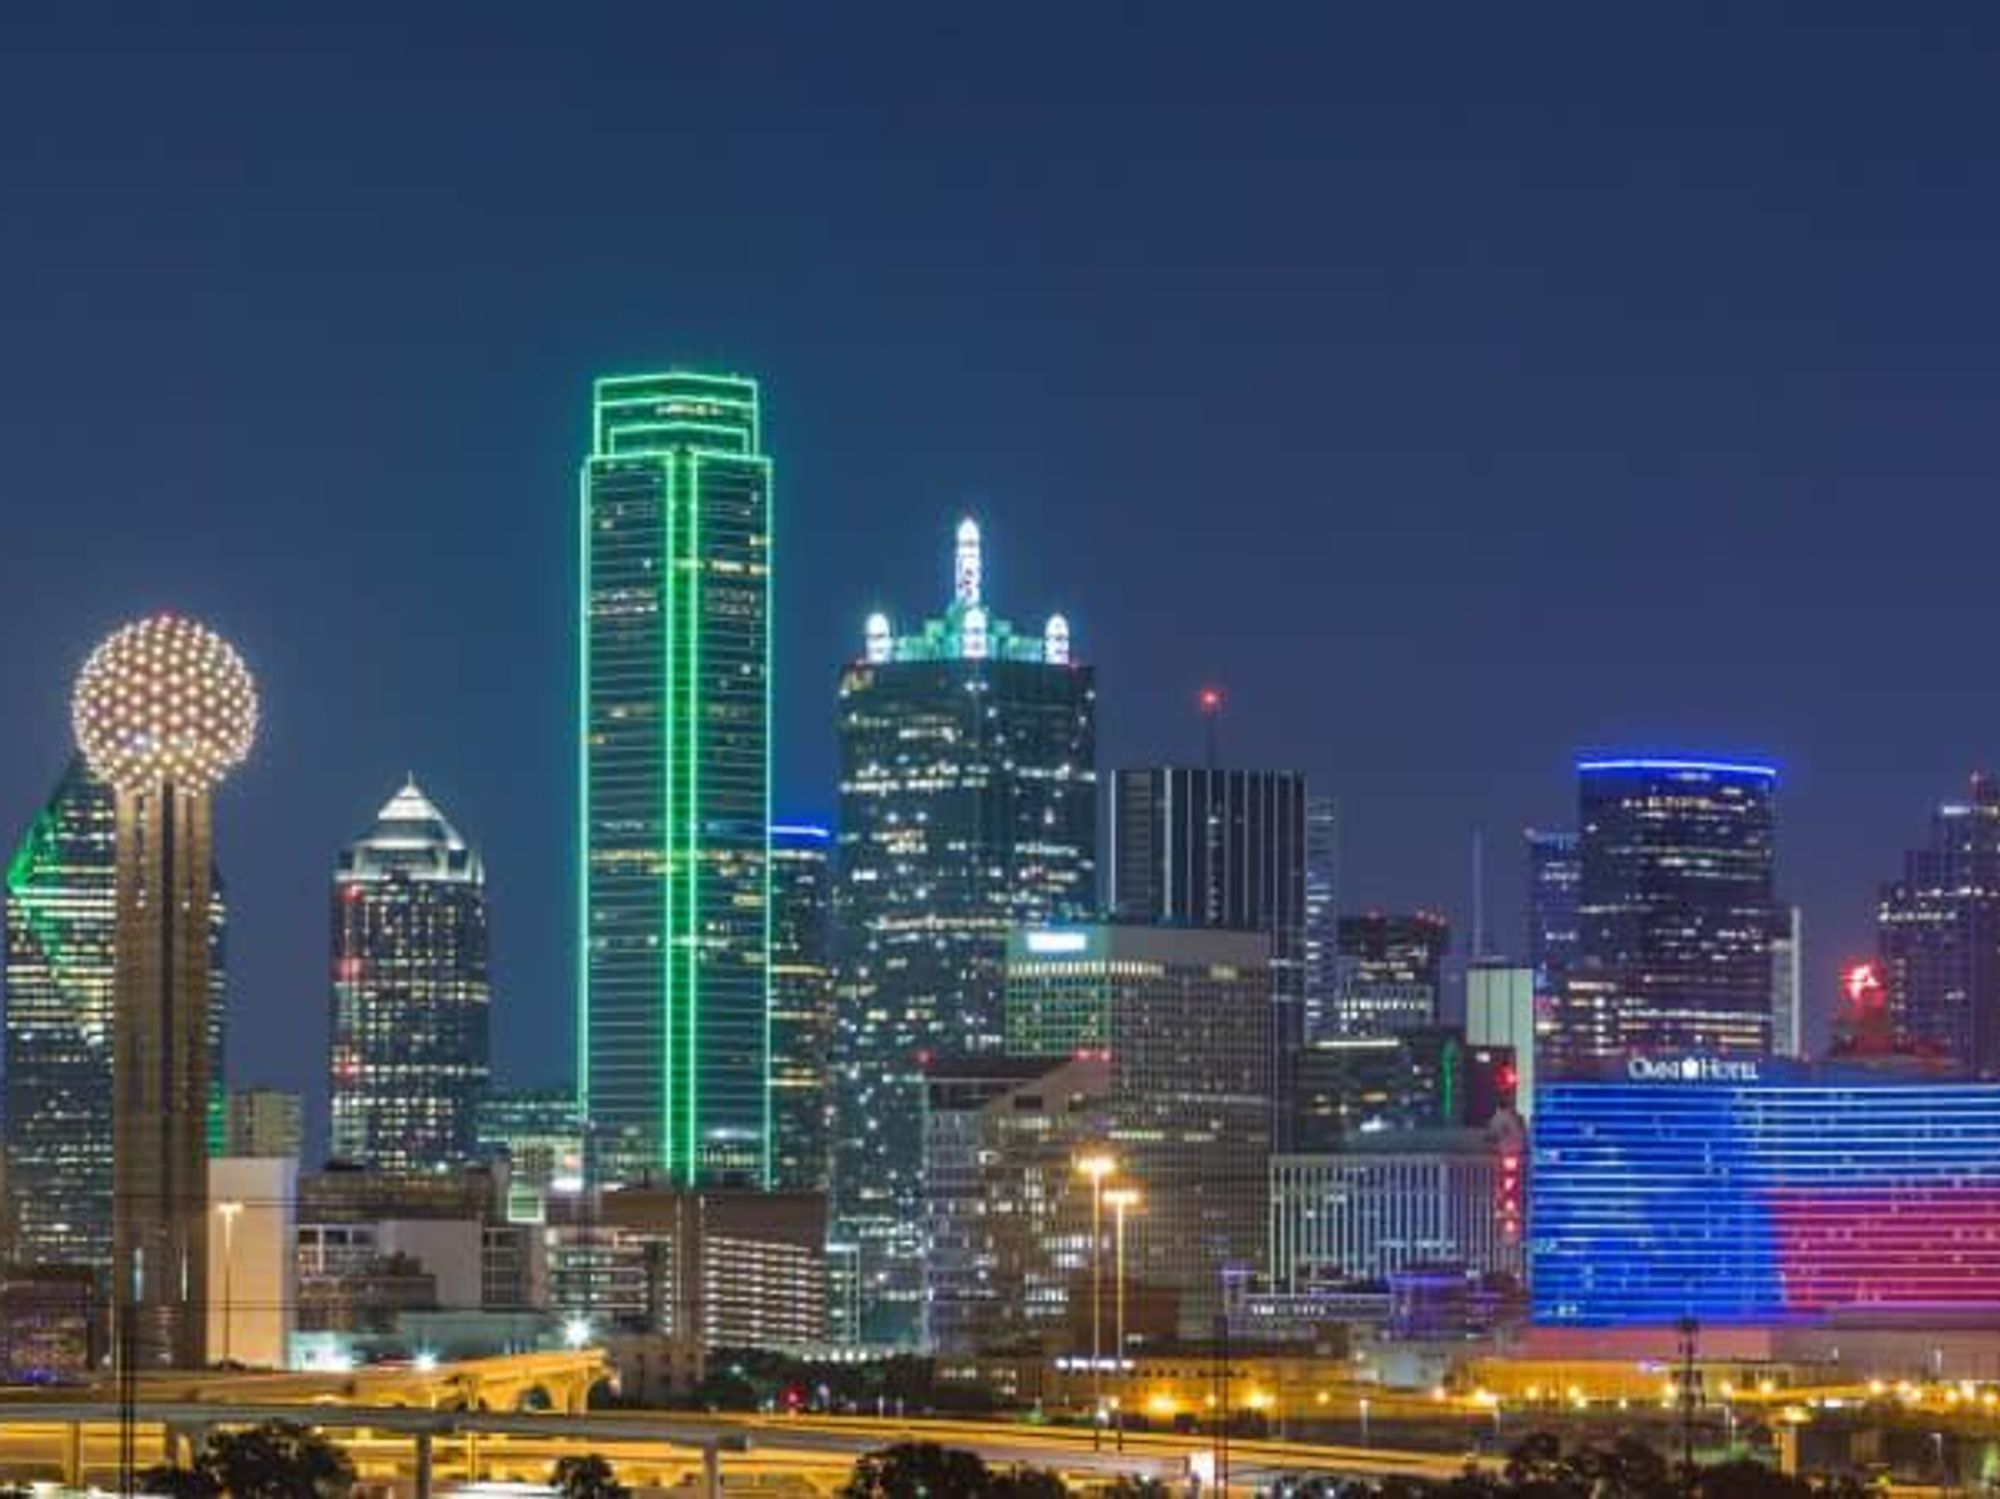 Omni Dallas, Dallas skyline